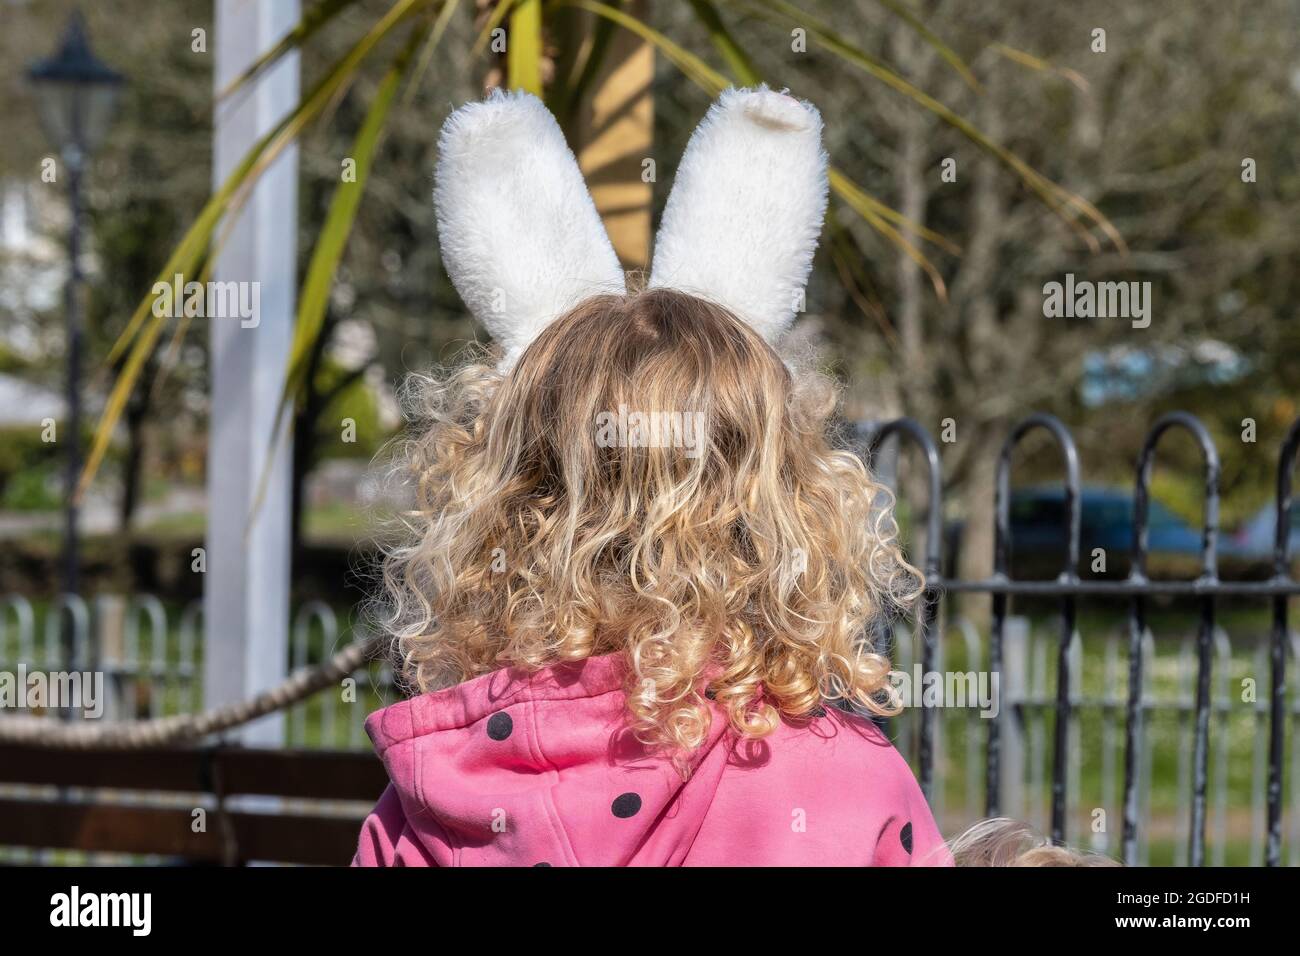 Vista posterior de una joven con pelo rubio rizado con suaves orejas de conejo. Foto de stock